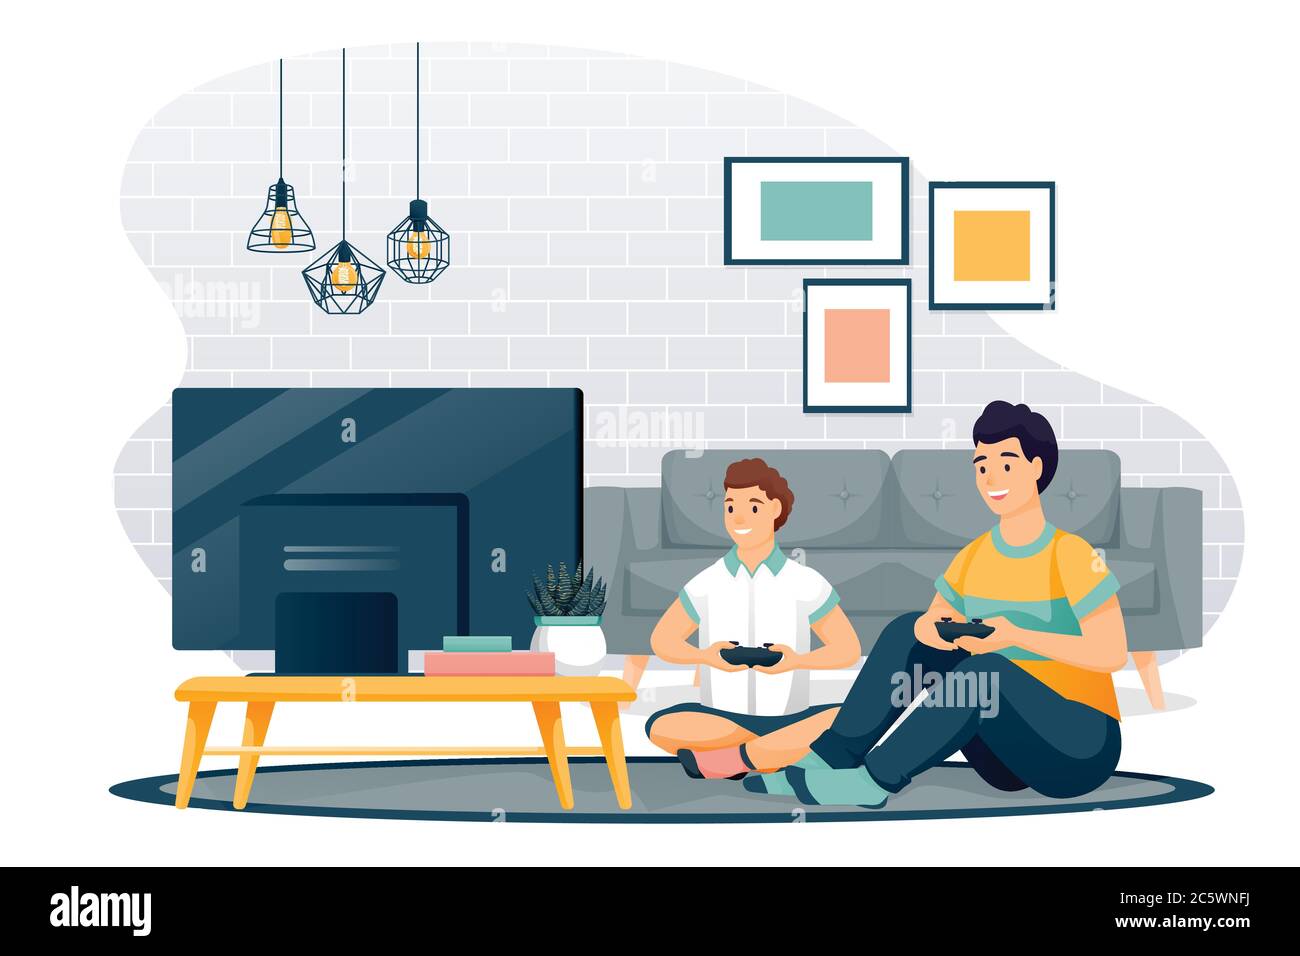 Un père et un fils heureux jouent dans un jeu vidéo. Papa et petit garçon avec des gamepads s'assoient sur le sol dans le salon, devant la télévision. Illustration des caractères vectoriels. Illustration de Vecteur